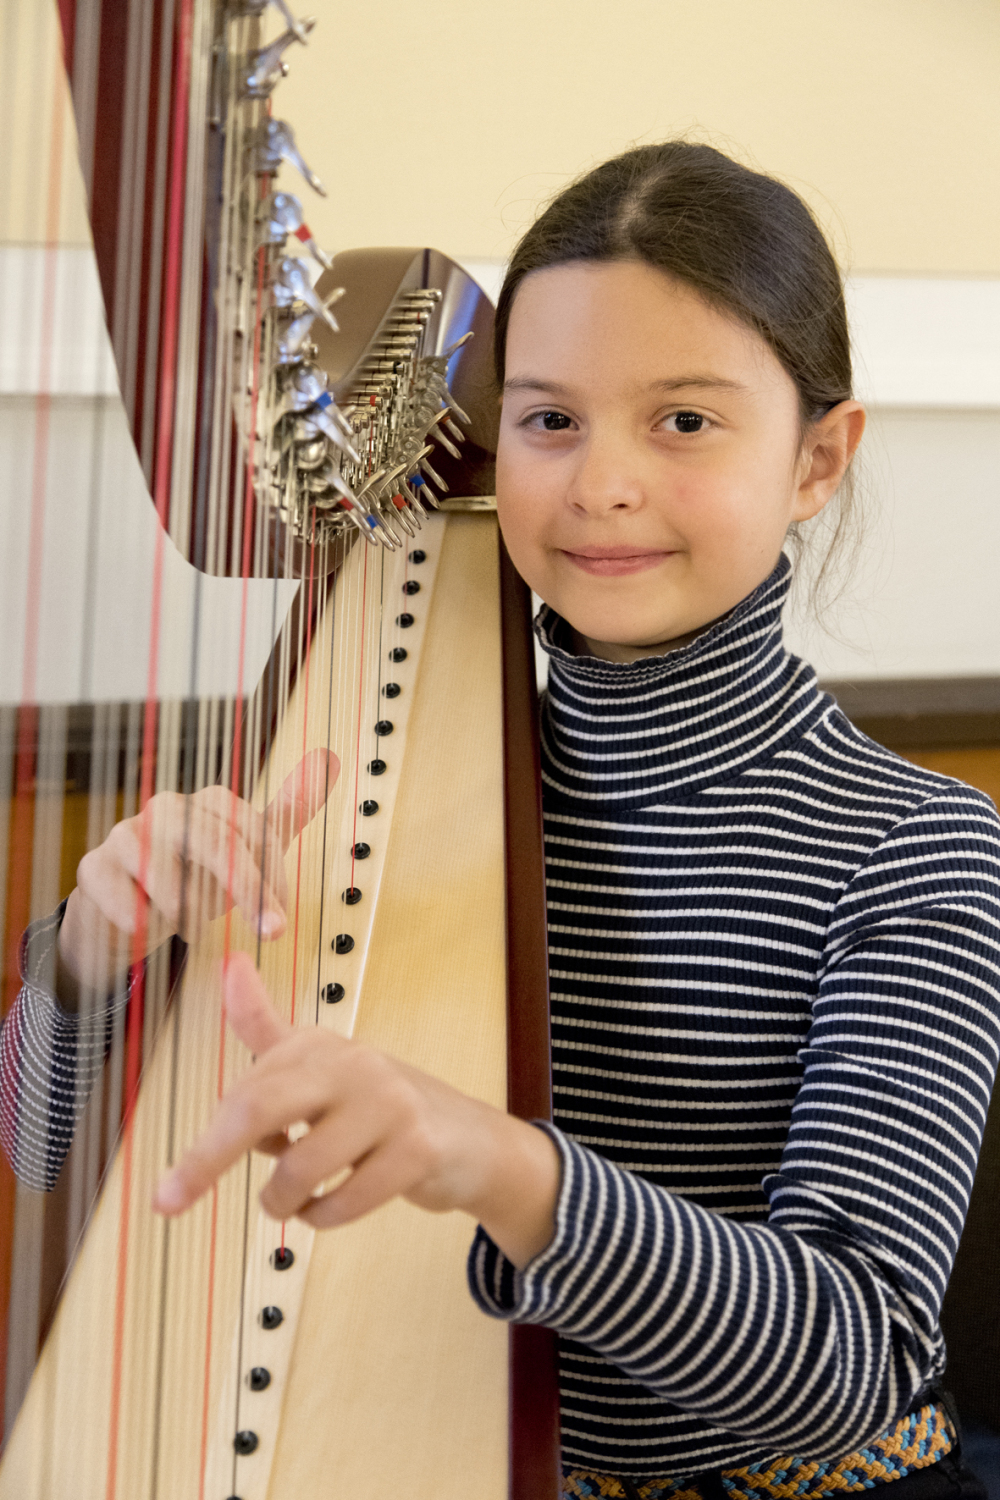 Das Kulturprogramm wurde von der Pankower Musikschule Béla Bartók konzipiert. Den Beginn der Veranstaltung begleitete die Harfenspielerin Johanna Trekel.